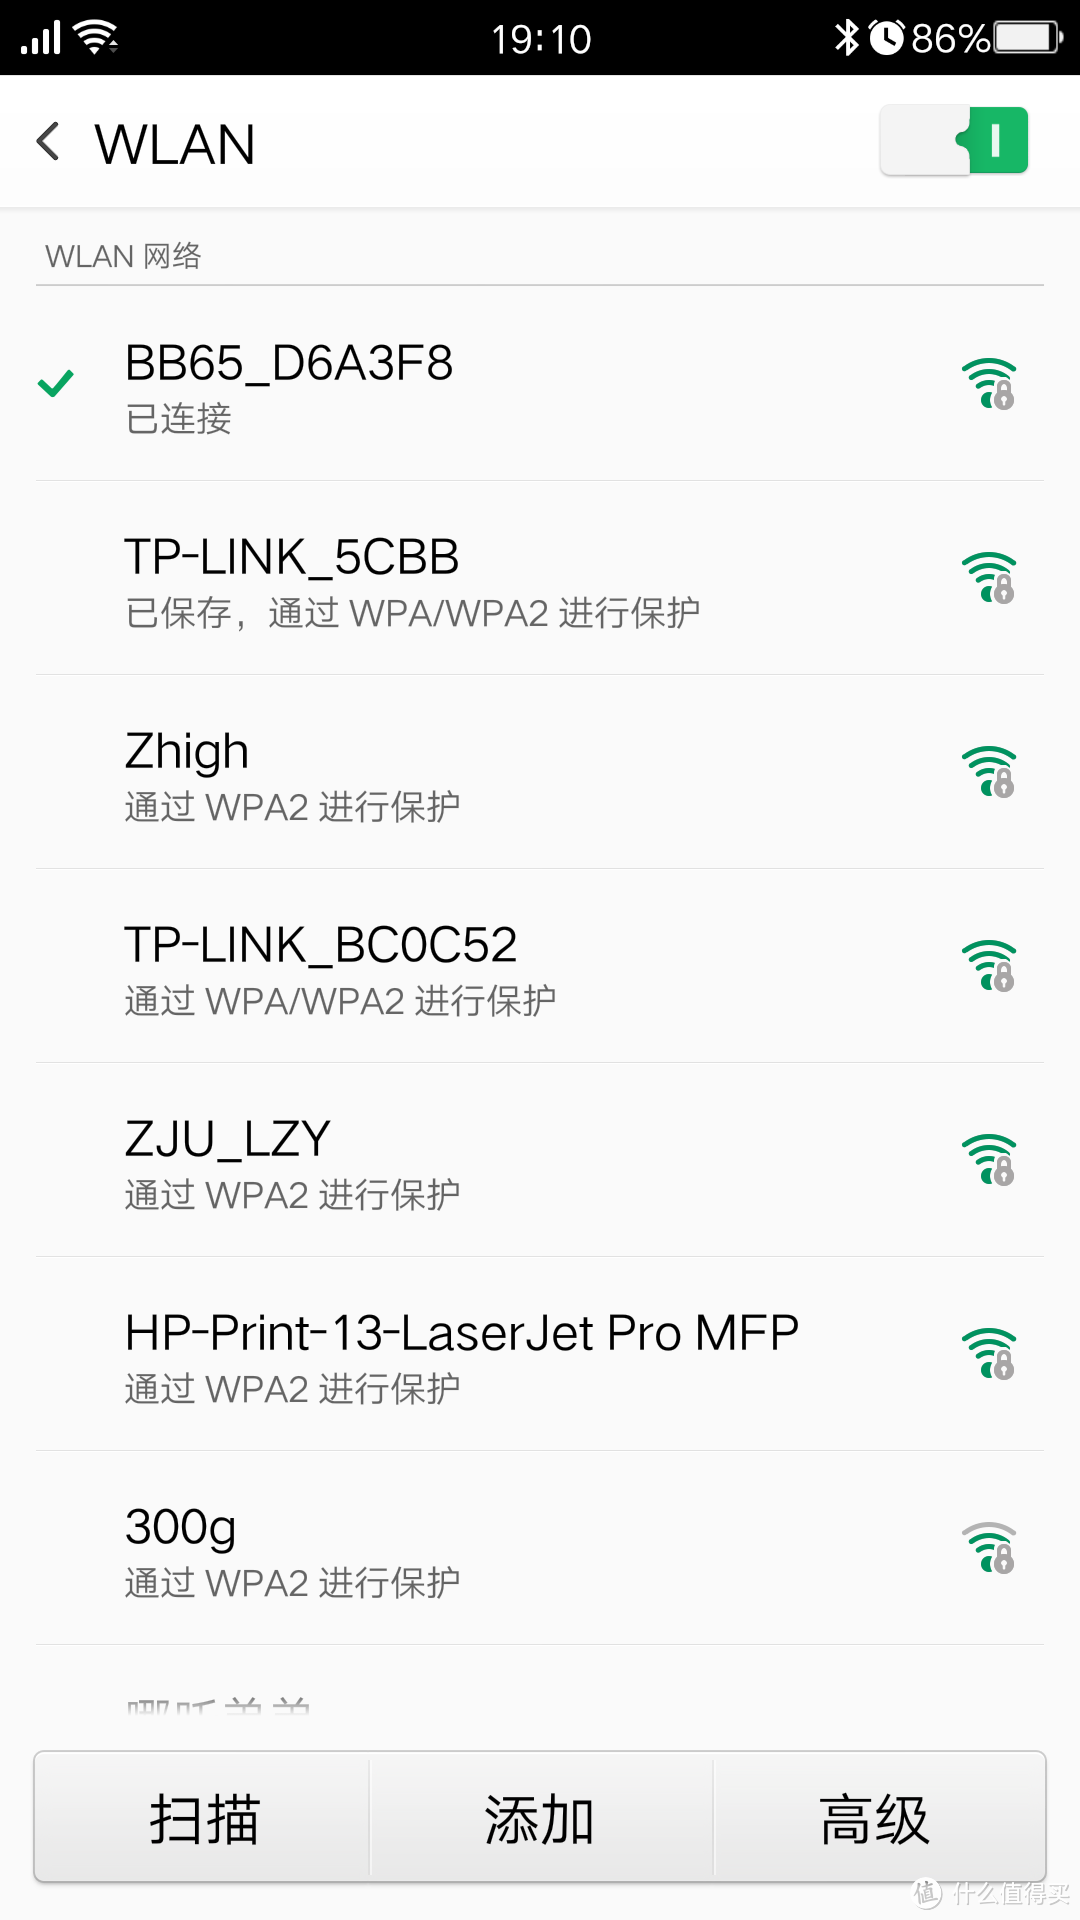 招商福利——bebo 移动 wifi 设备 简单开箱